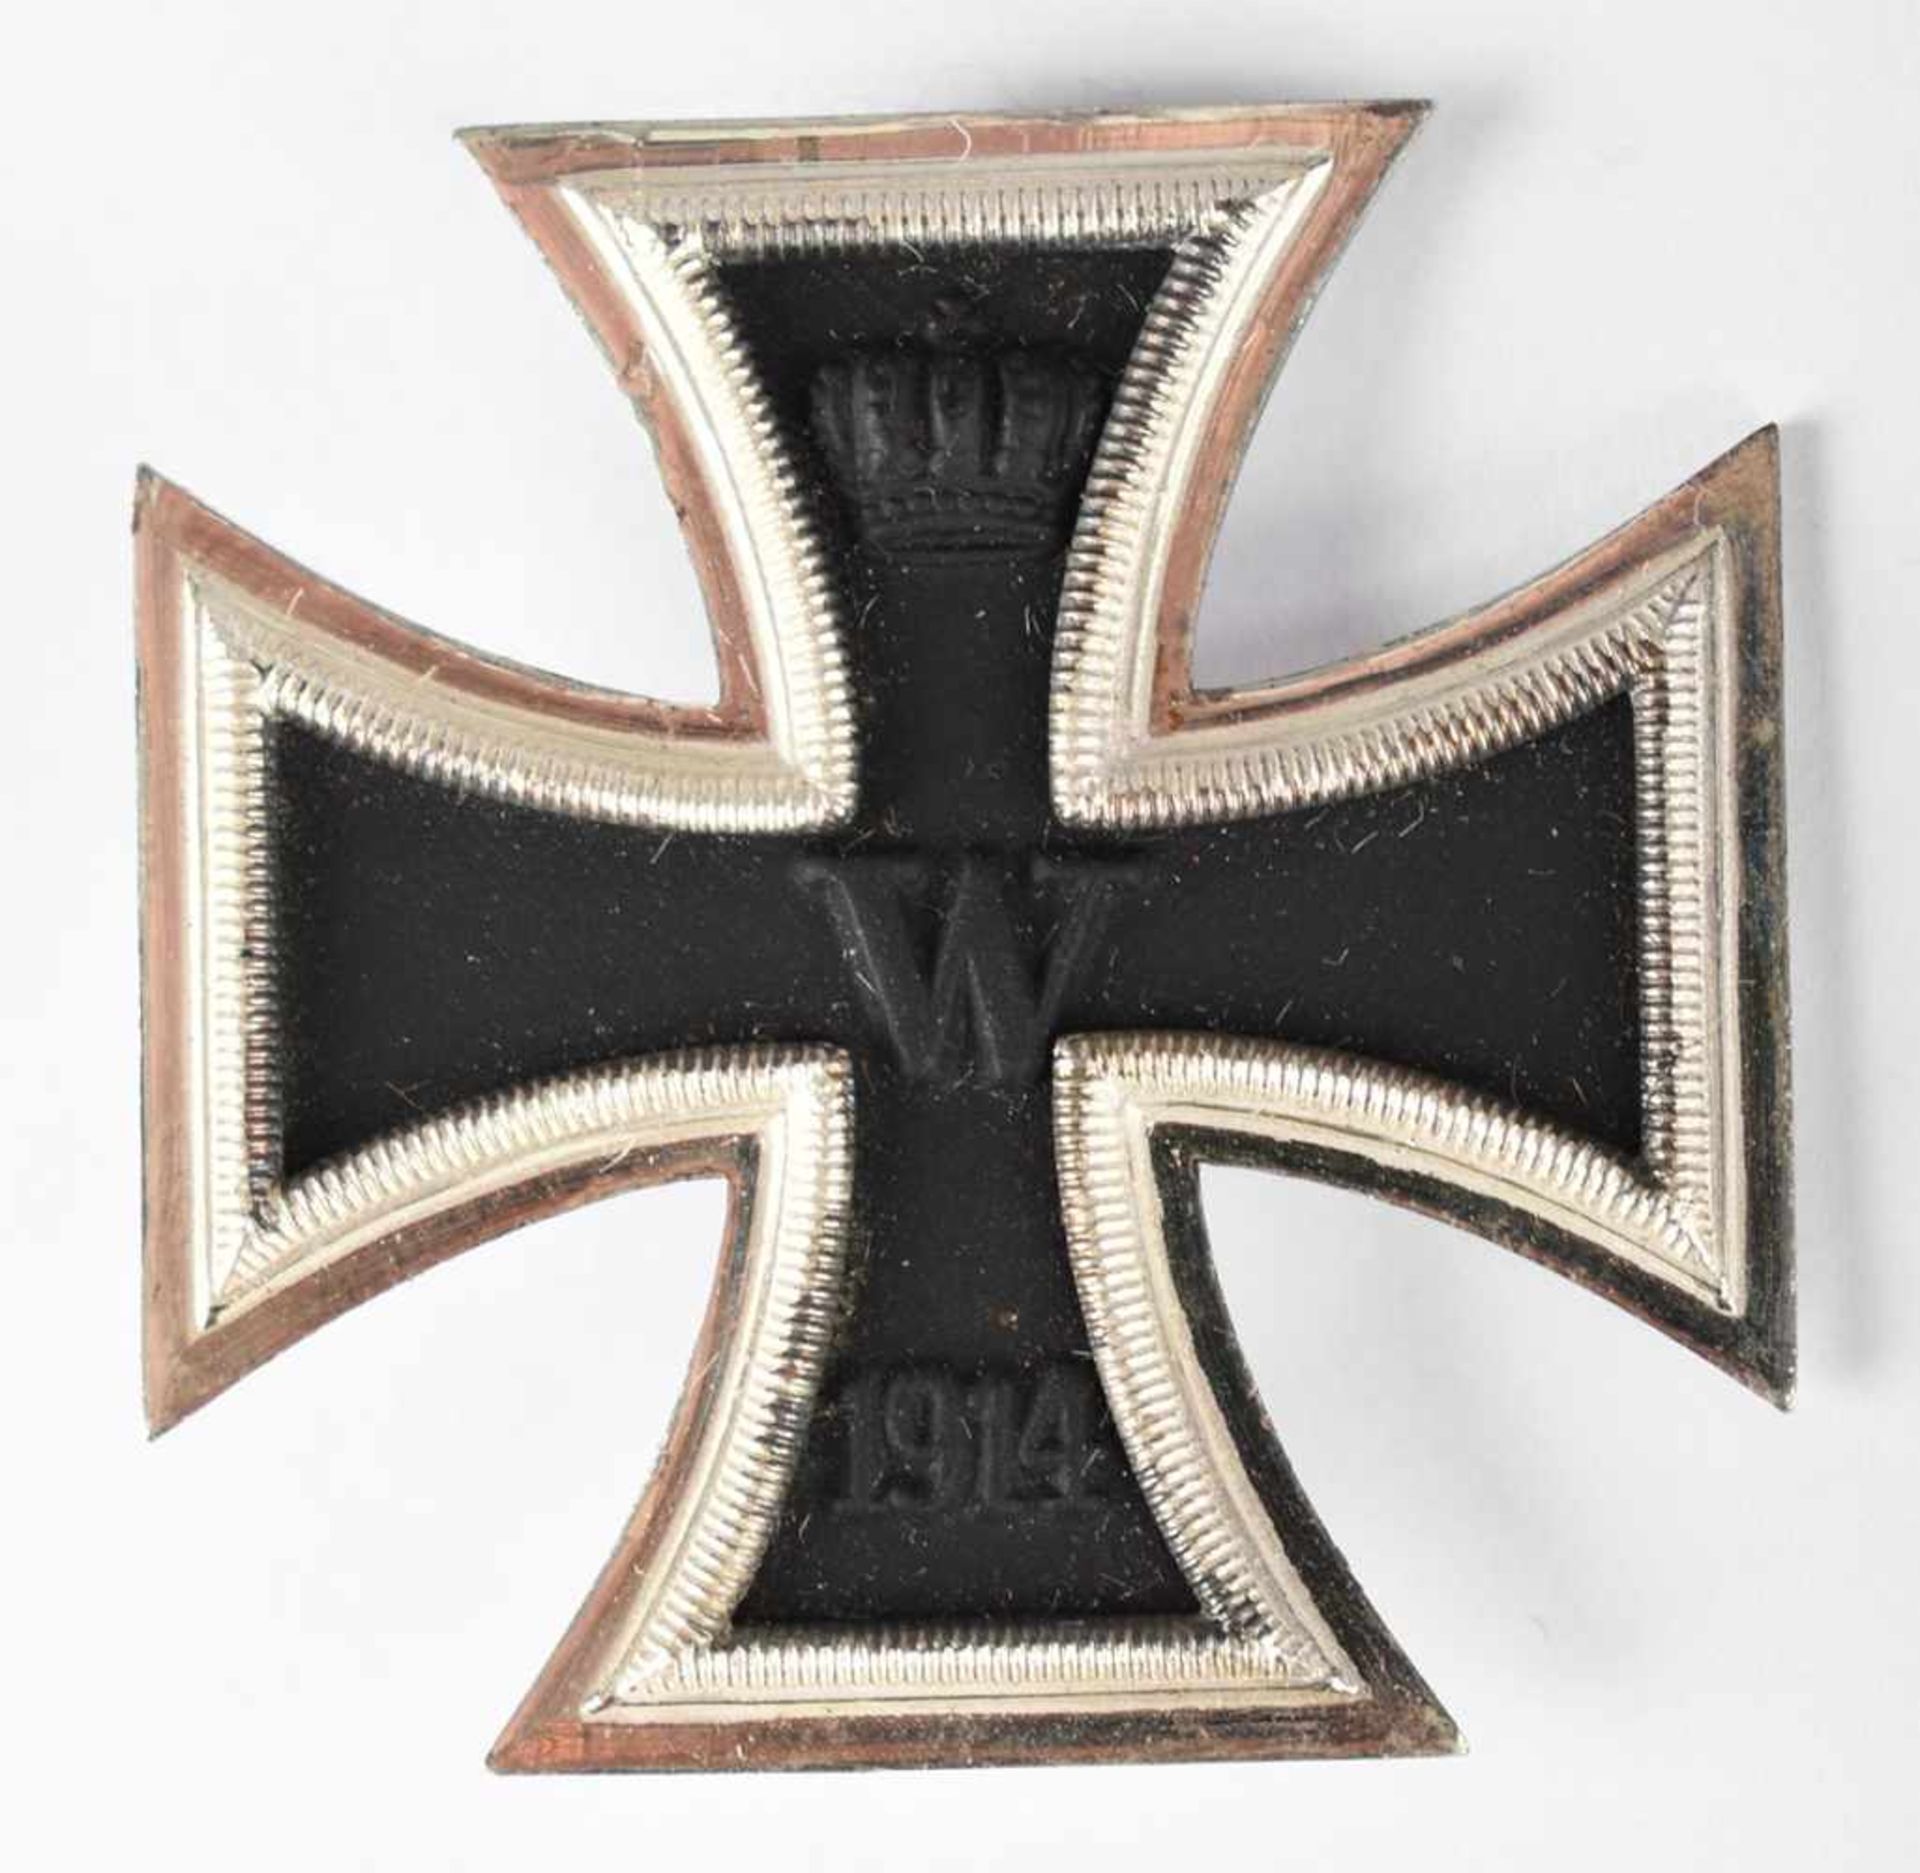 Auszeichnung Kaiserreich Eisernes Kreuz I. Klasse, 1914, Nadel, ungeprüft, Altersspuren - Bild 2 aus 2